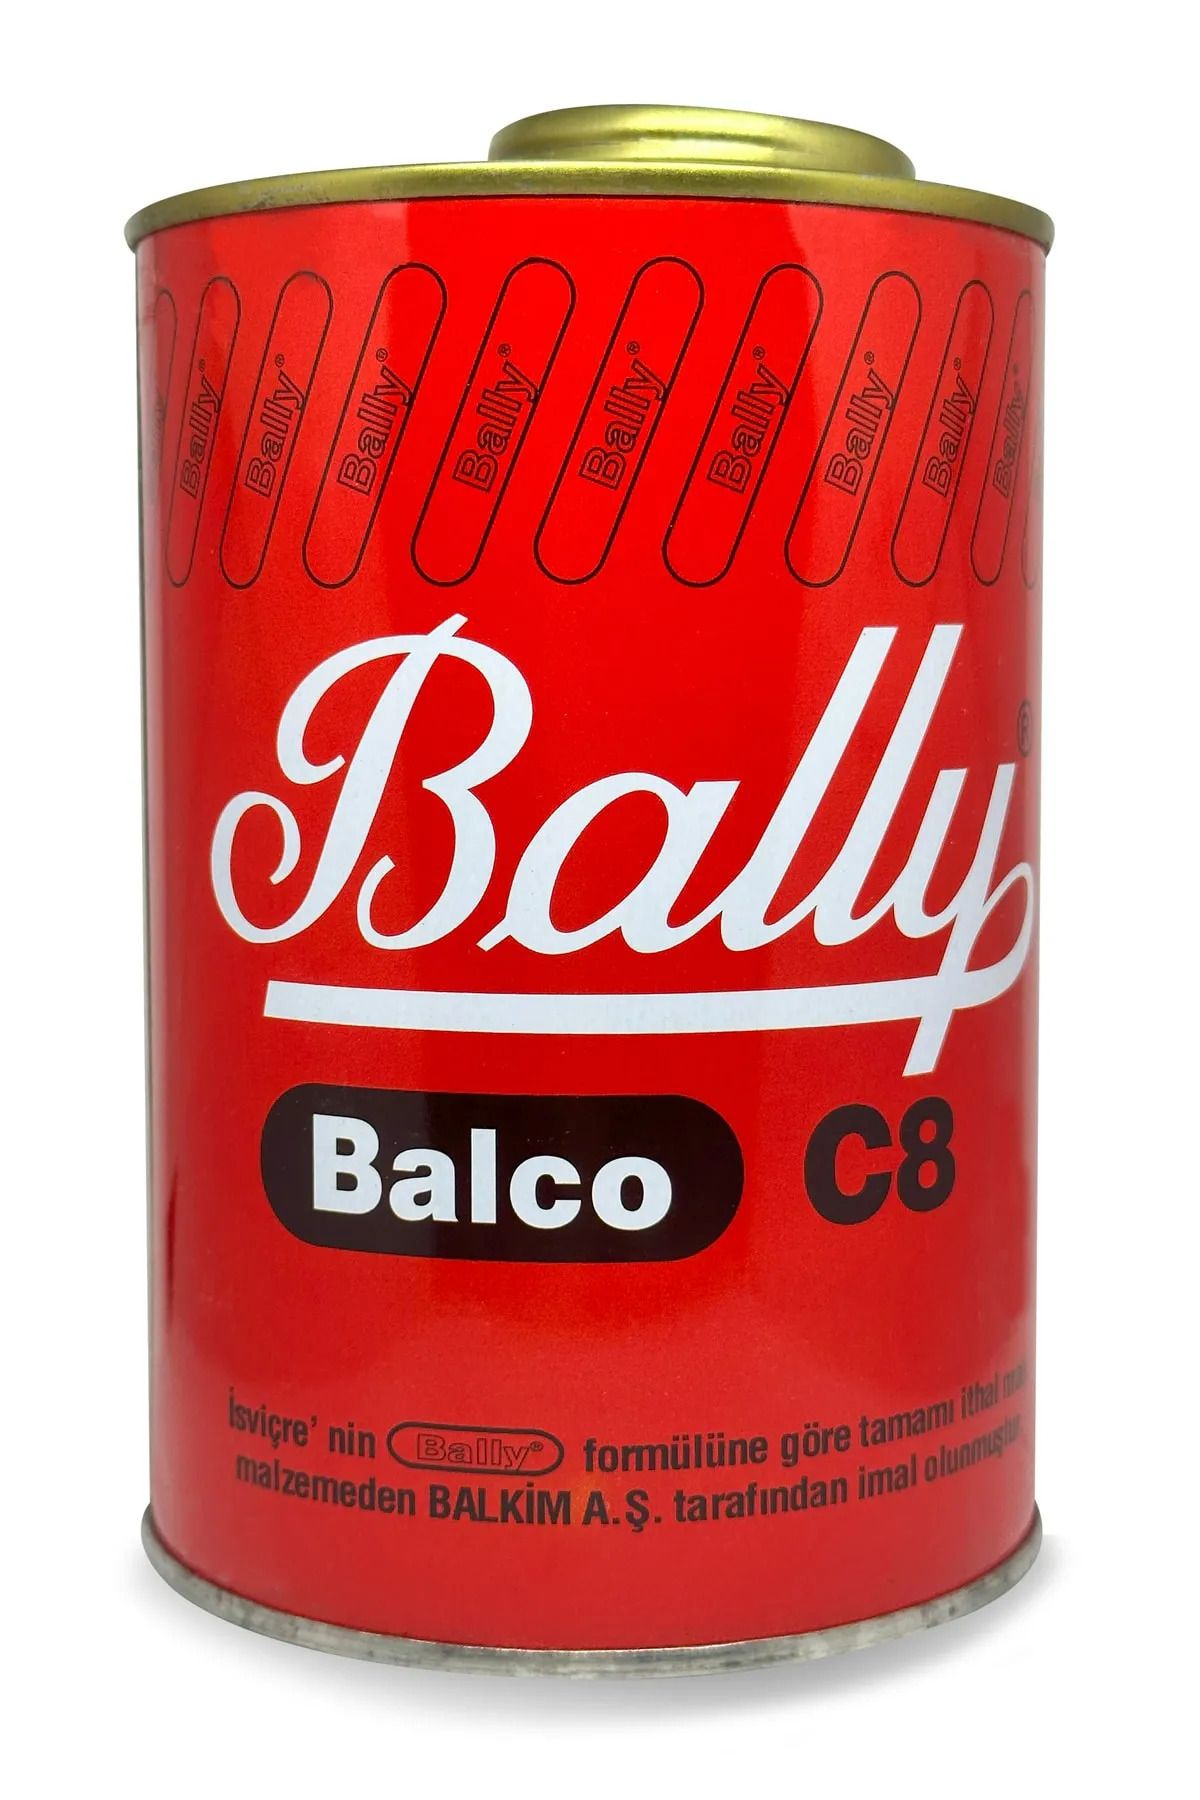 Bally Balco Bally 850 gr c-8 süper yapıştırıcı